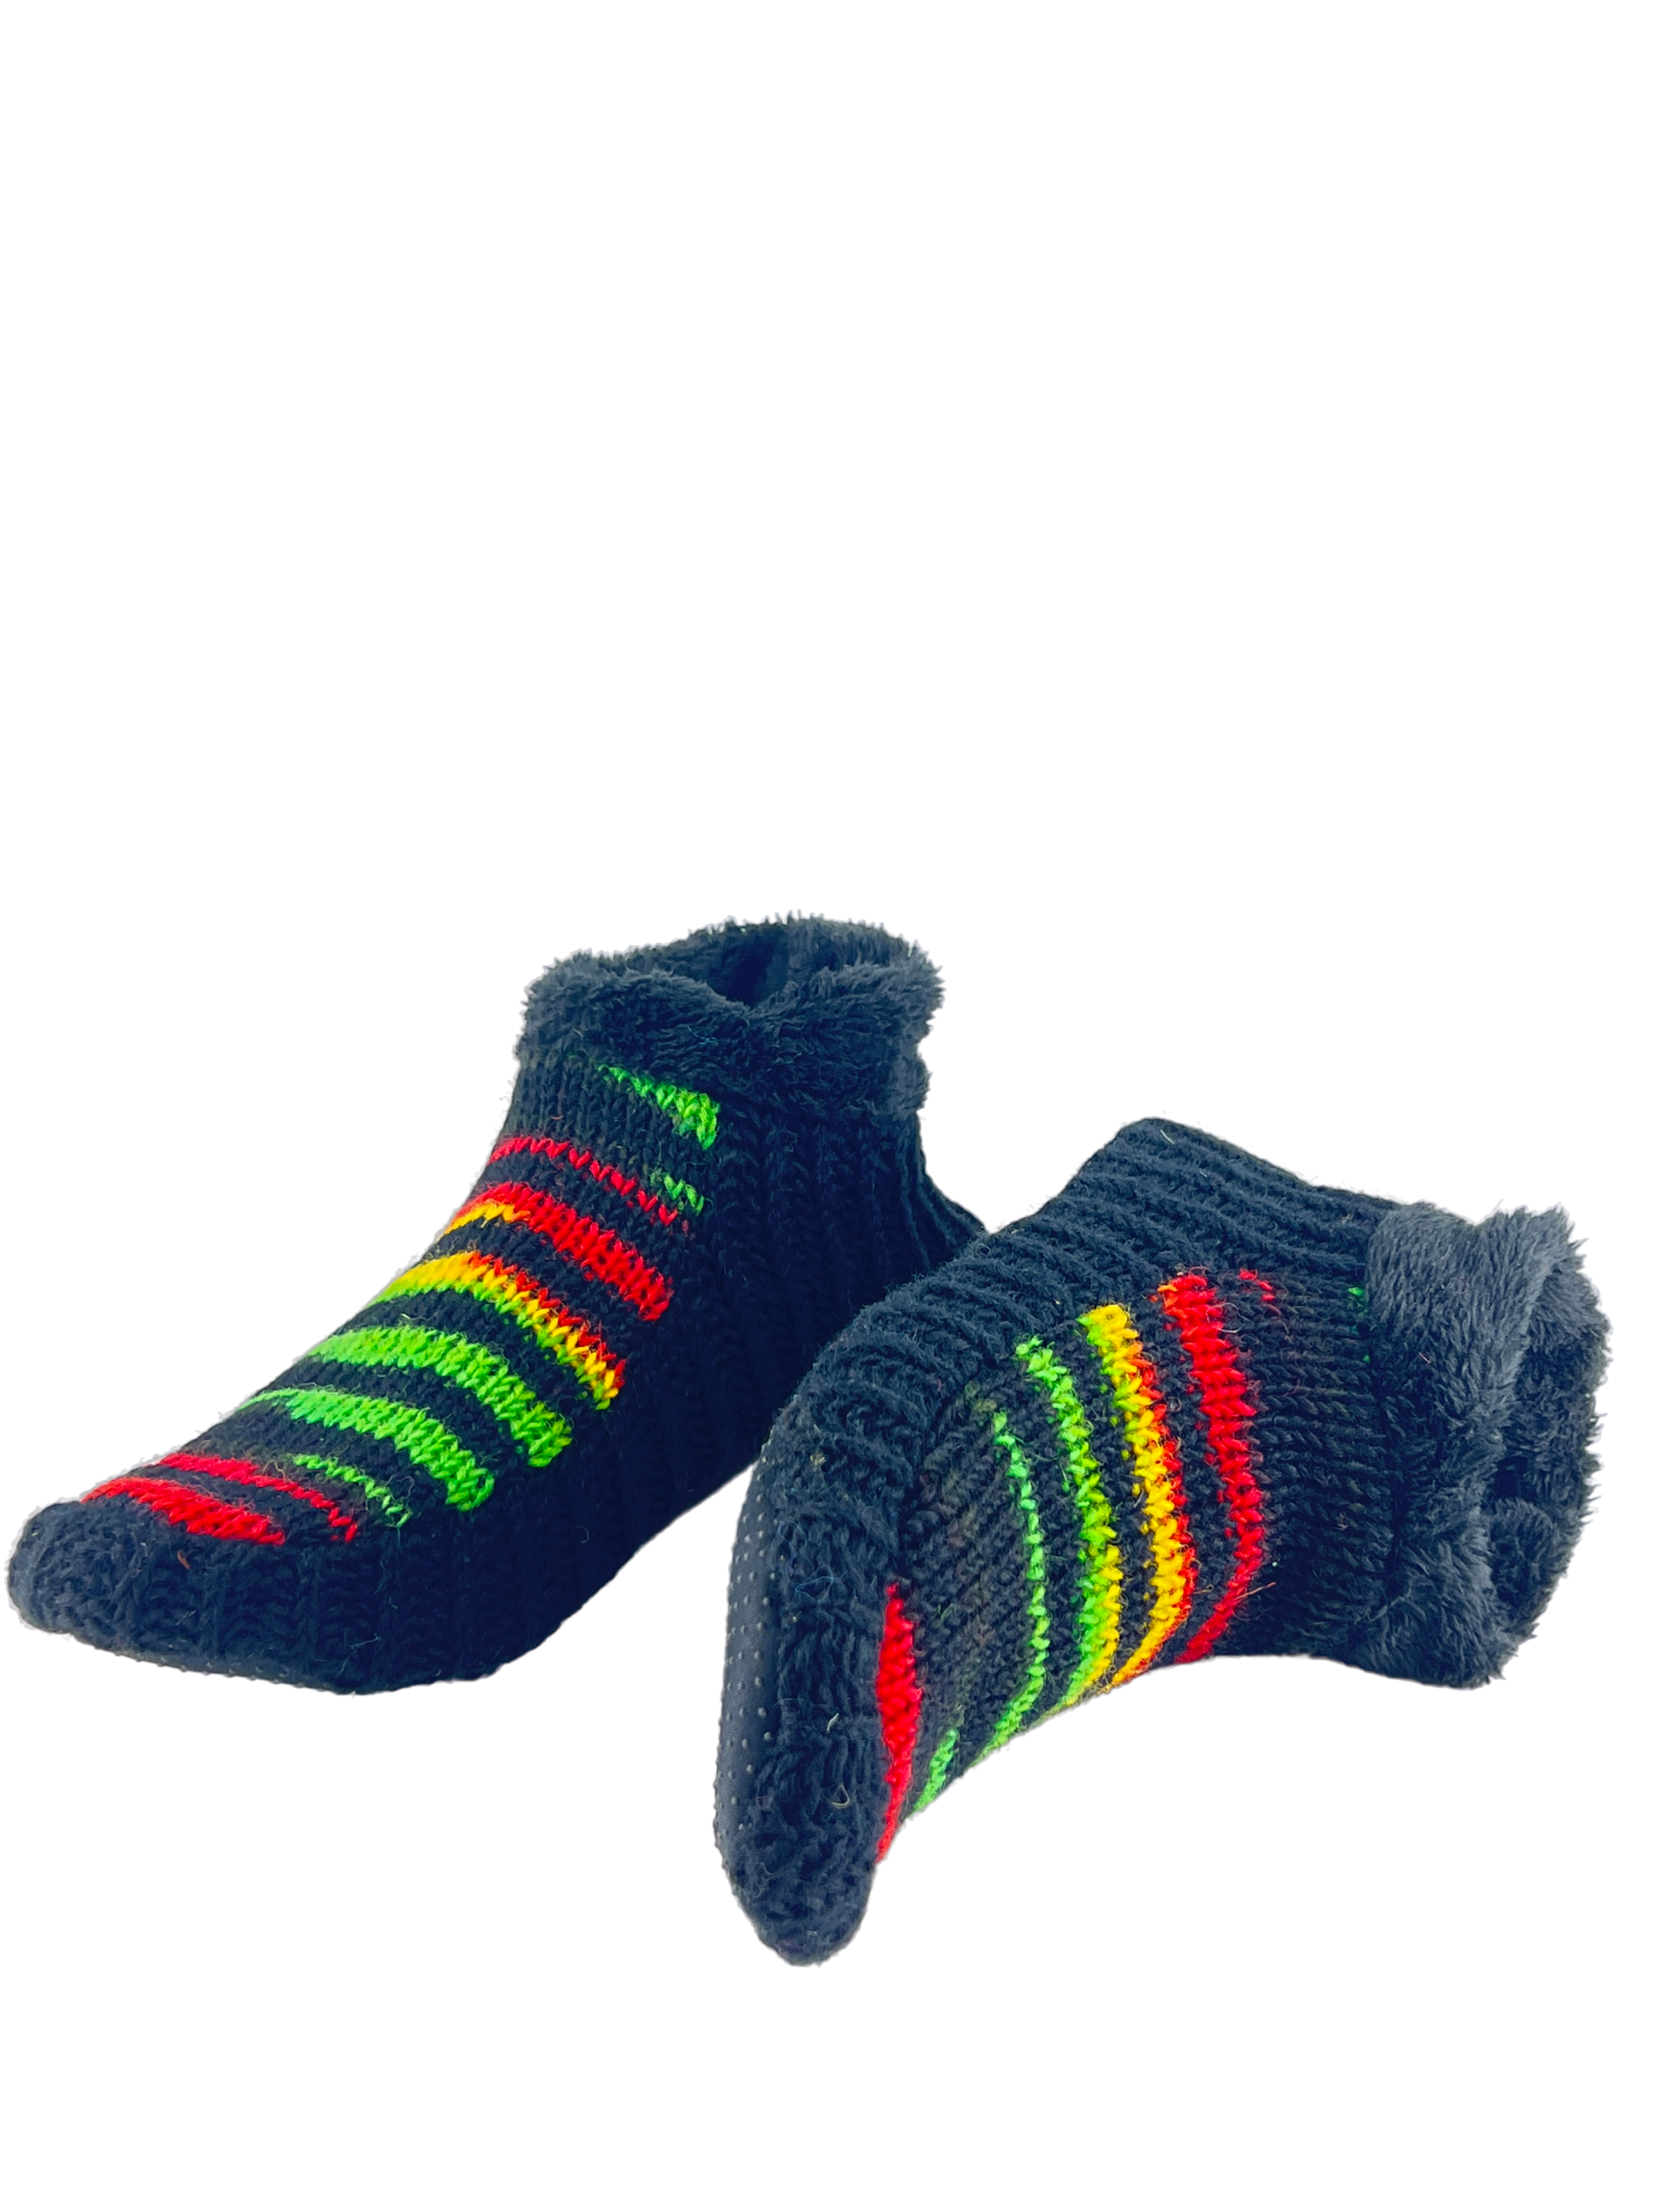 Indoor Non-slip Polar fur Wool Slippers  | Cozy Knitted Slipper Socks for Winters | Cute Ankle Length House Slippers for Men & Women